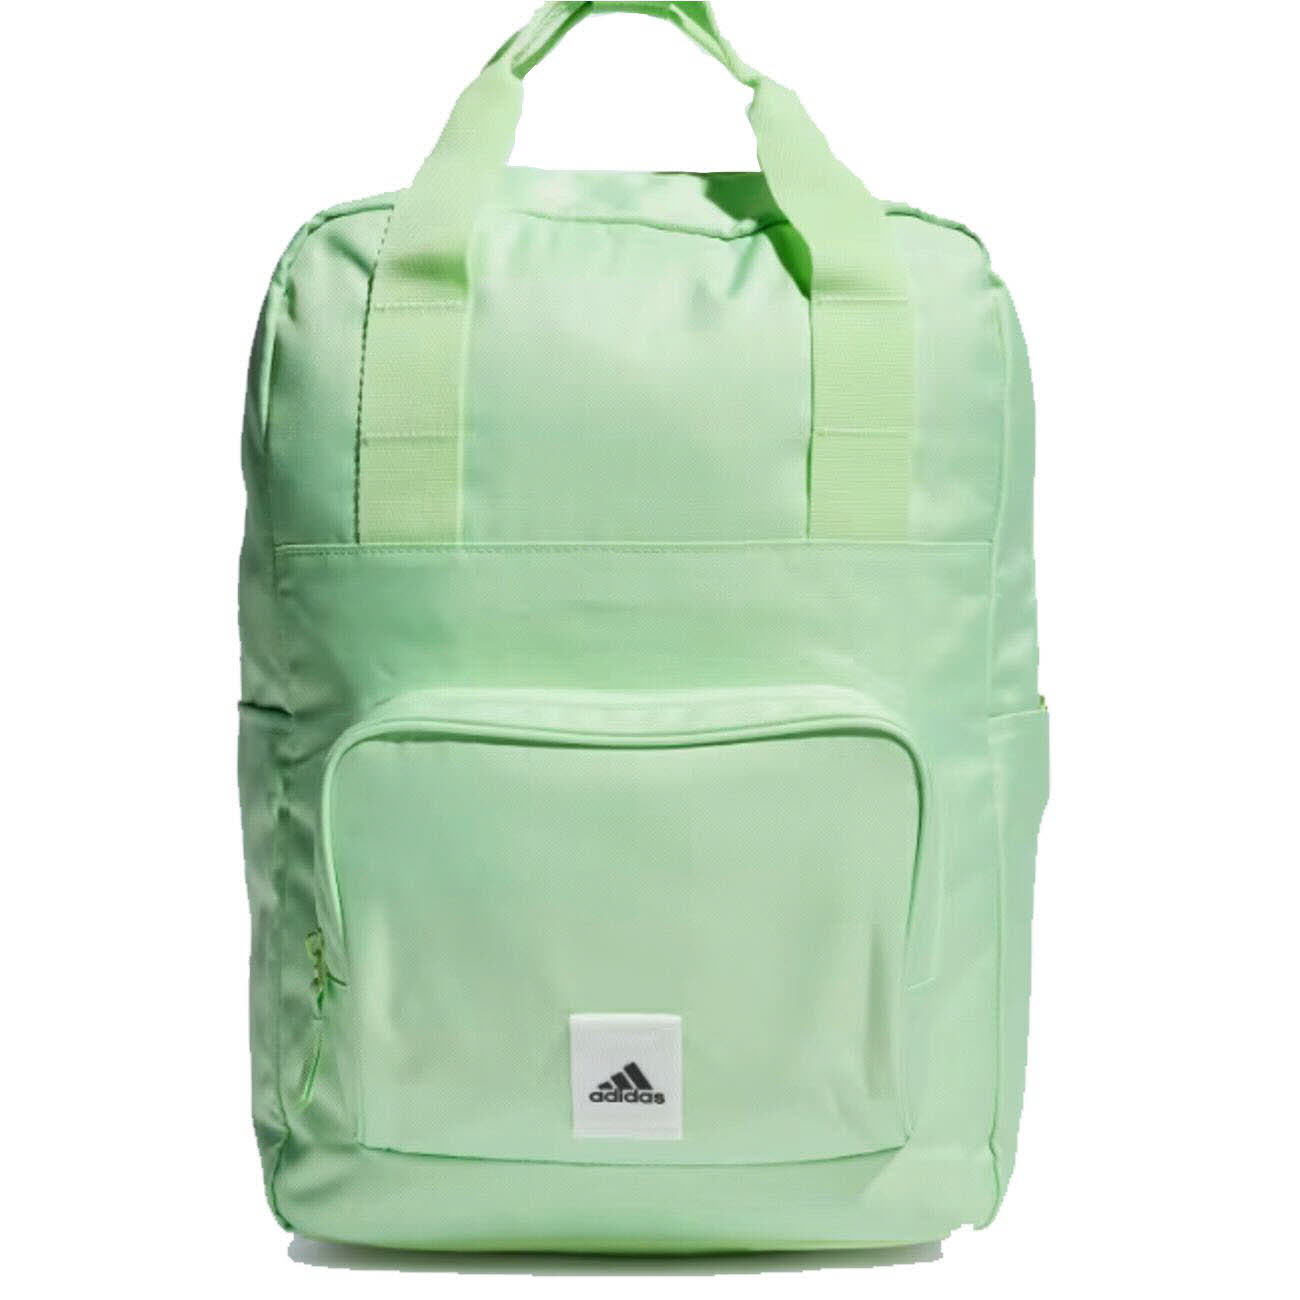 Damen Rucksack von Adidas auch in Grün erhältlich